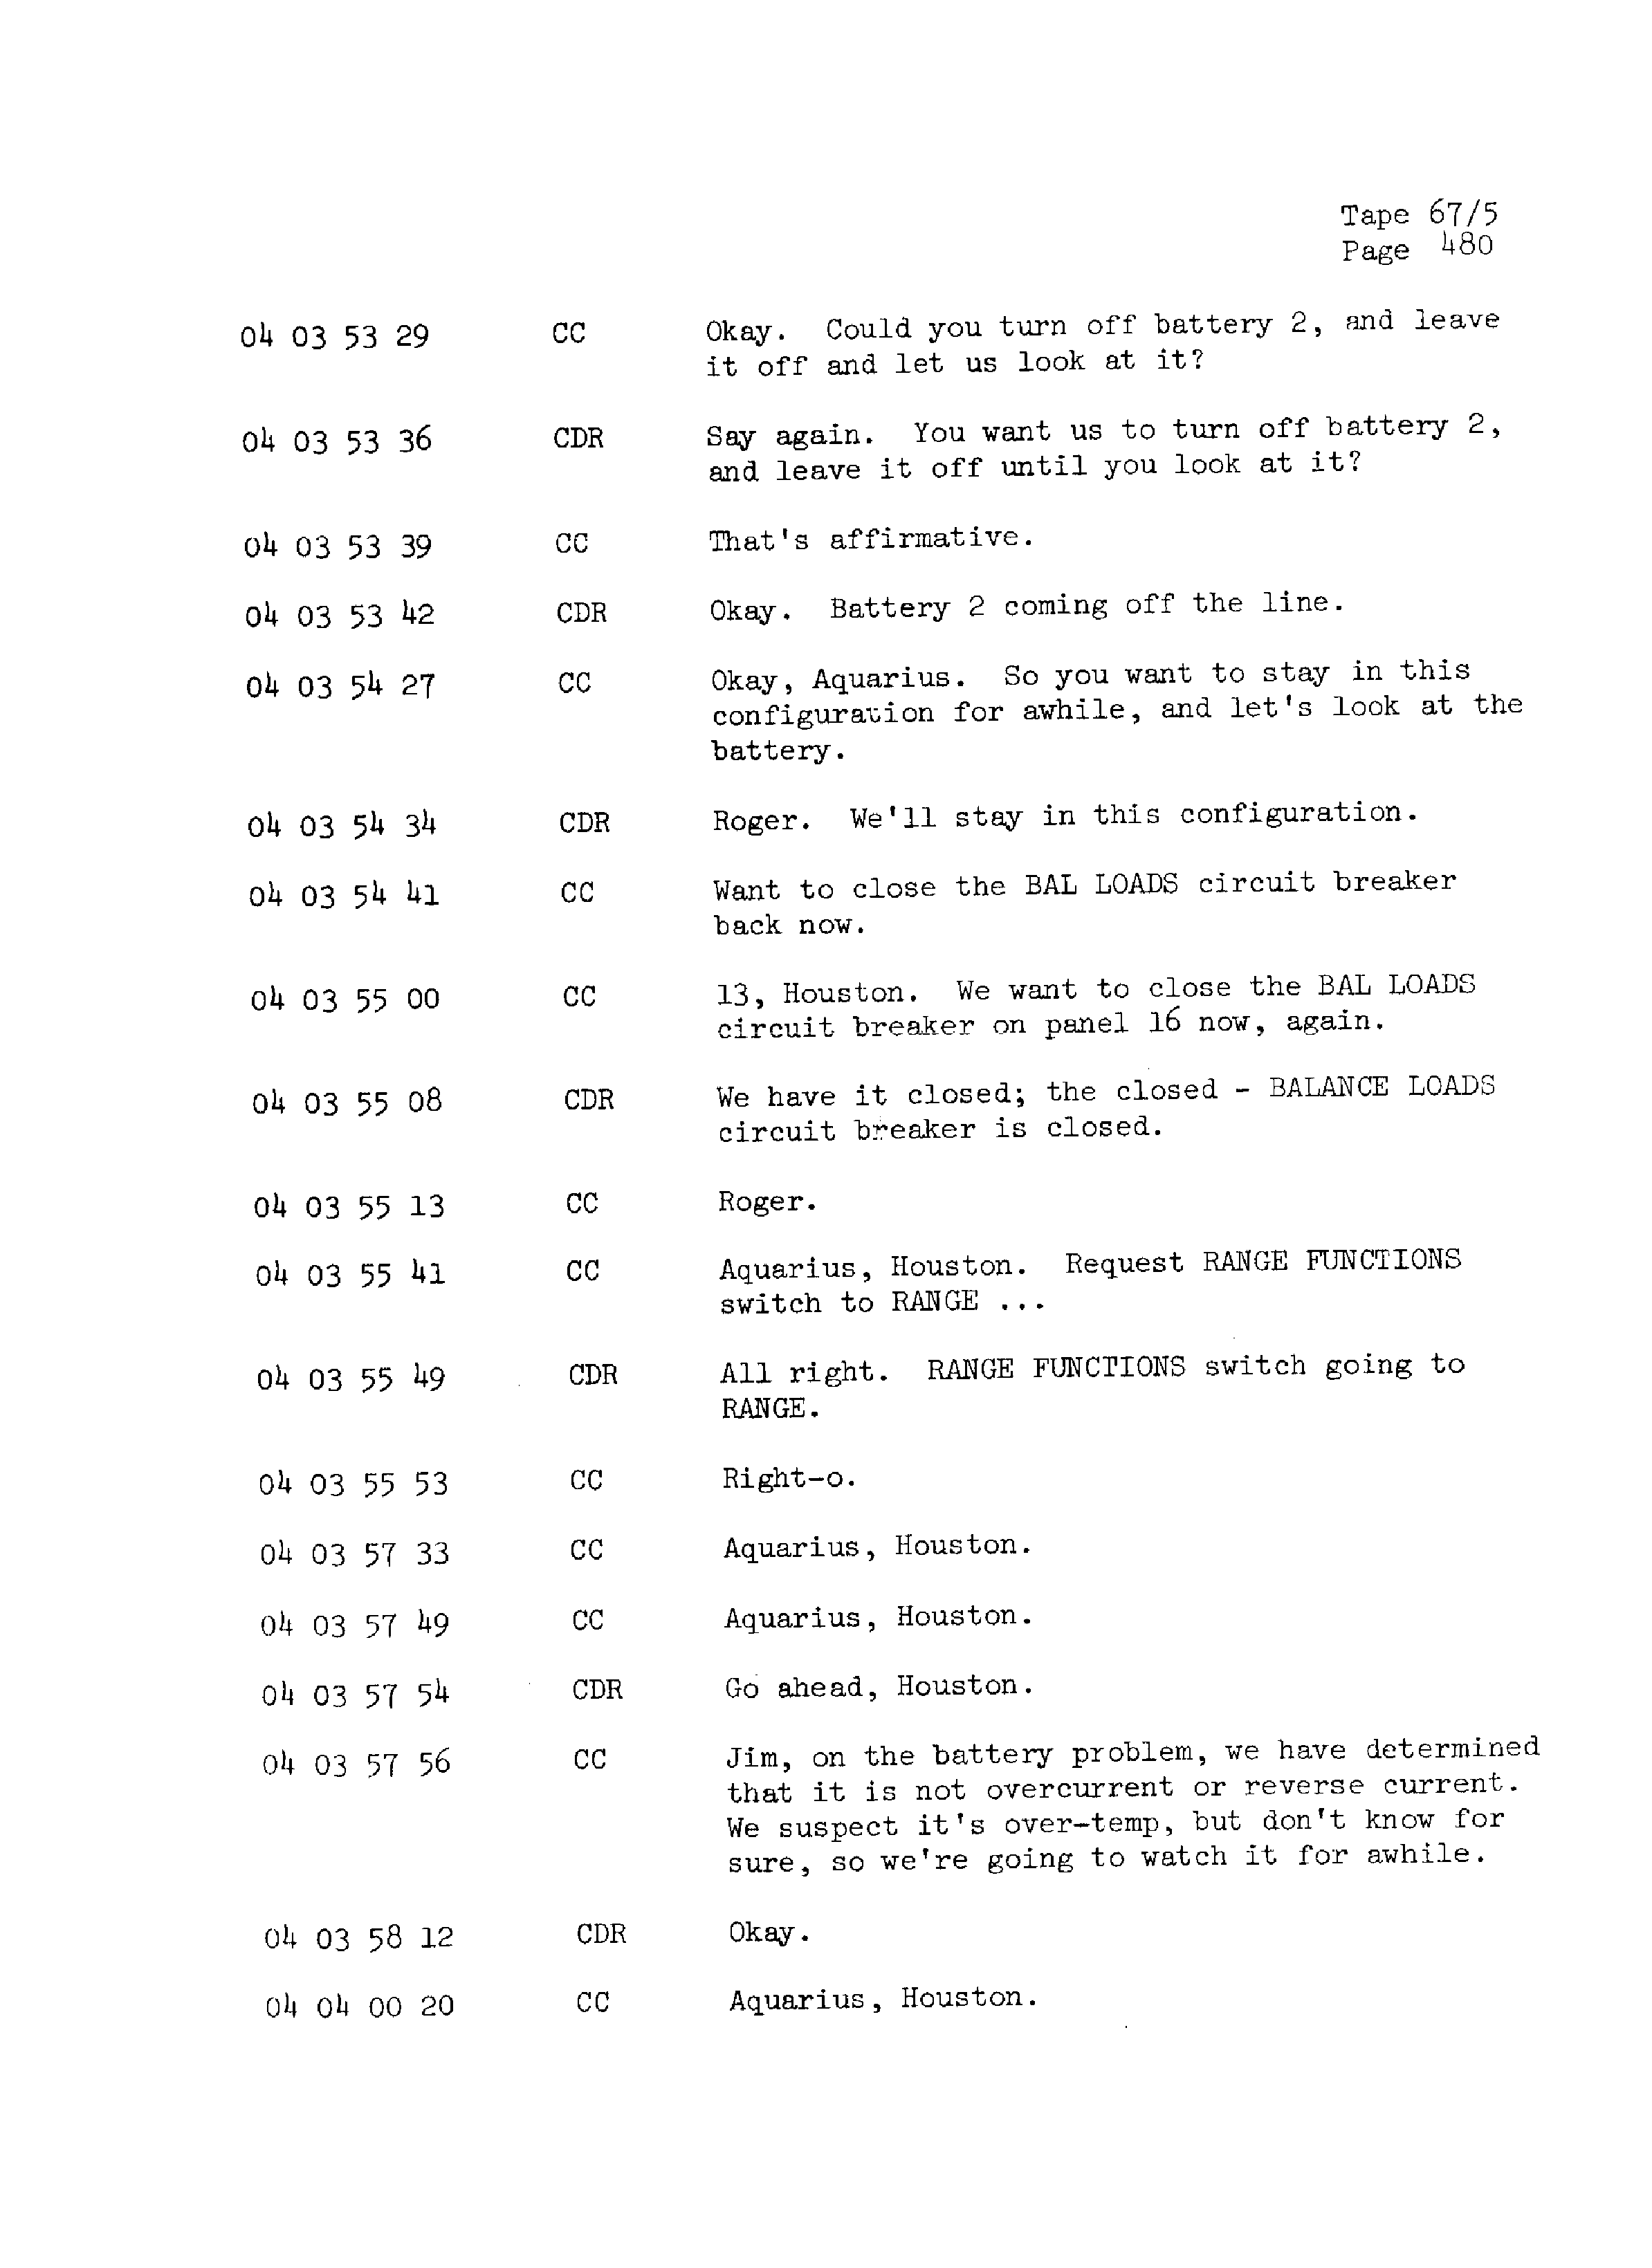 Page 487 of Apollo 13’s original transcript